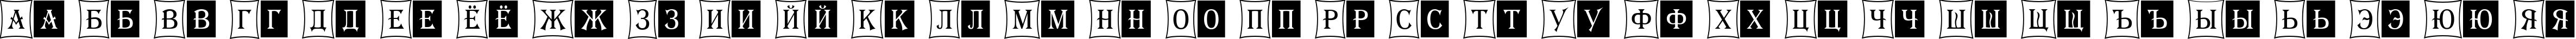 Пример написания русского алфавита шрифтом a_AlgeriusCmDc2Cmb